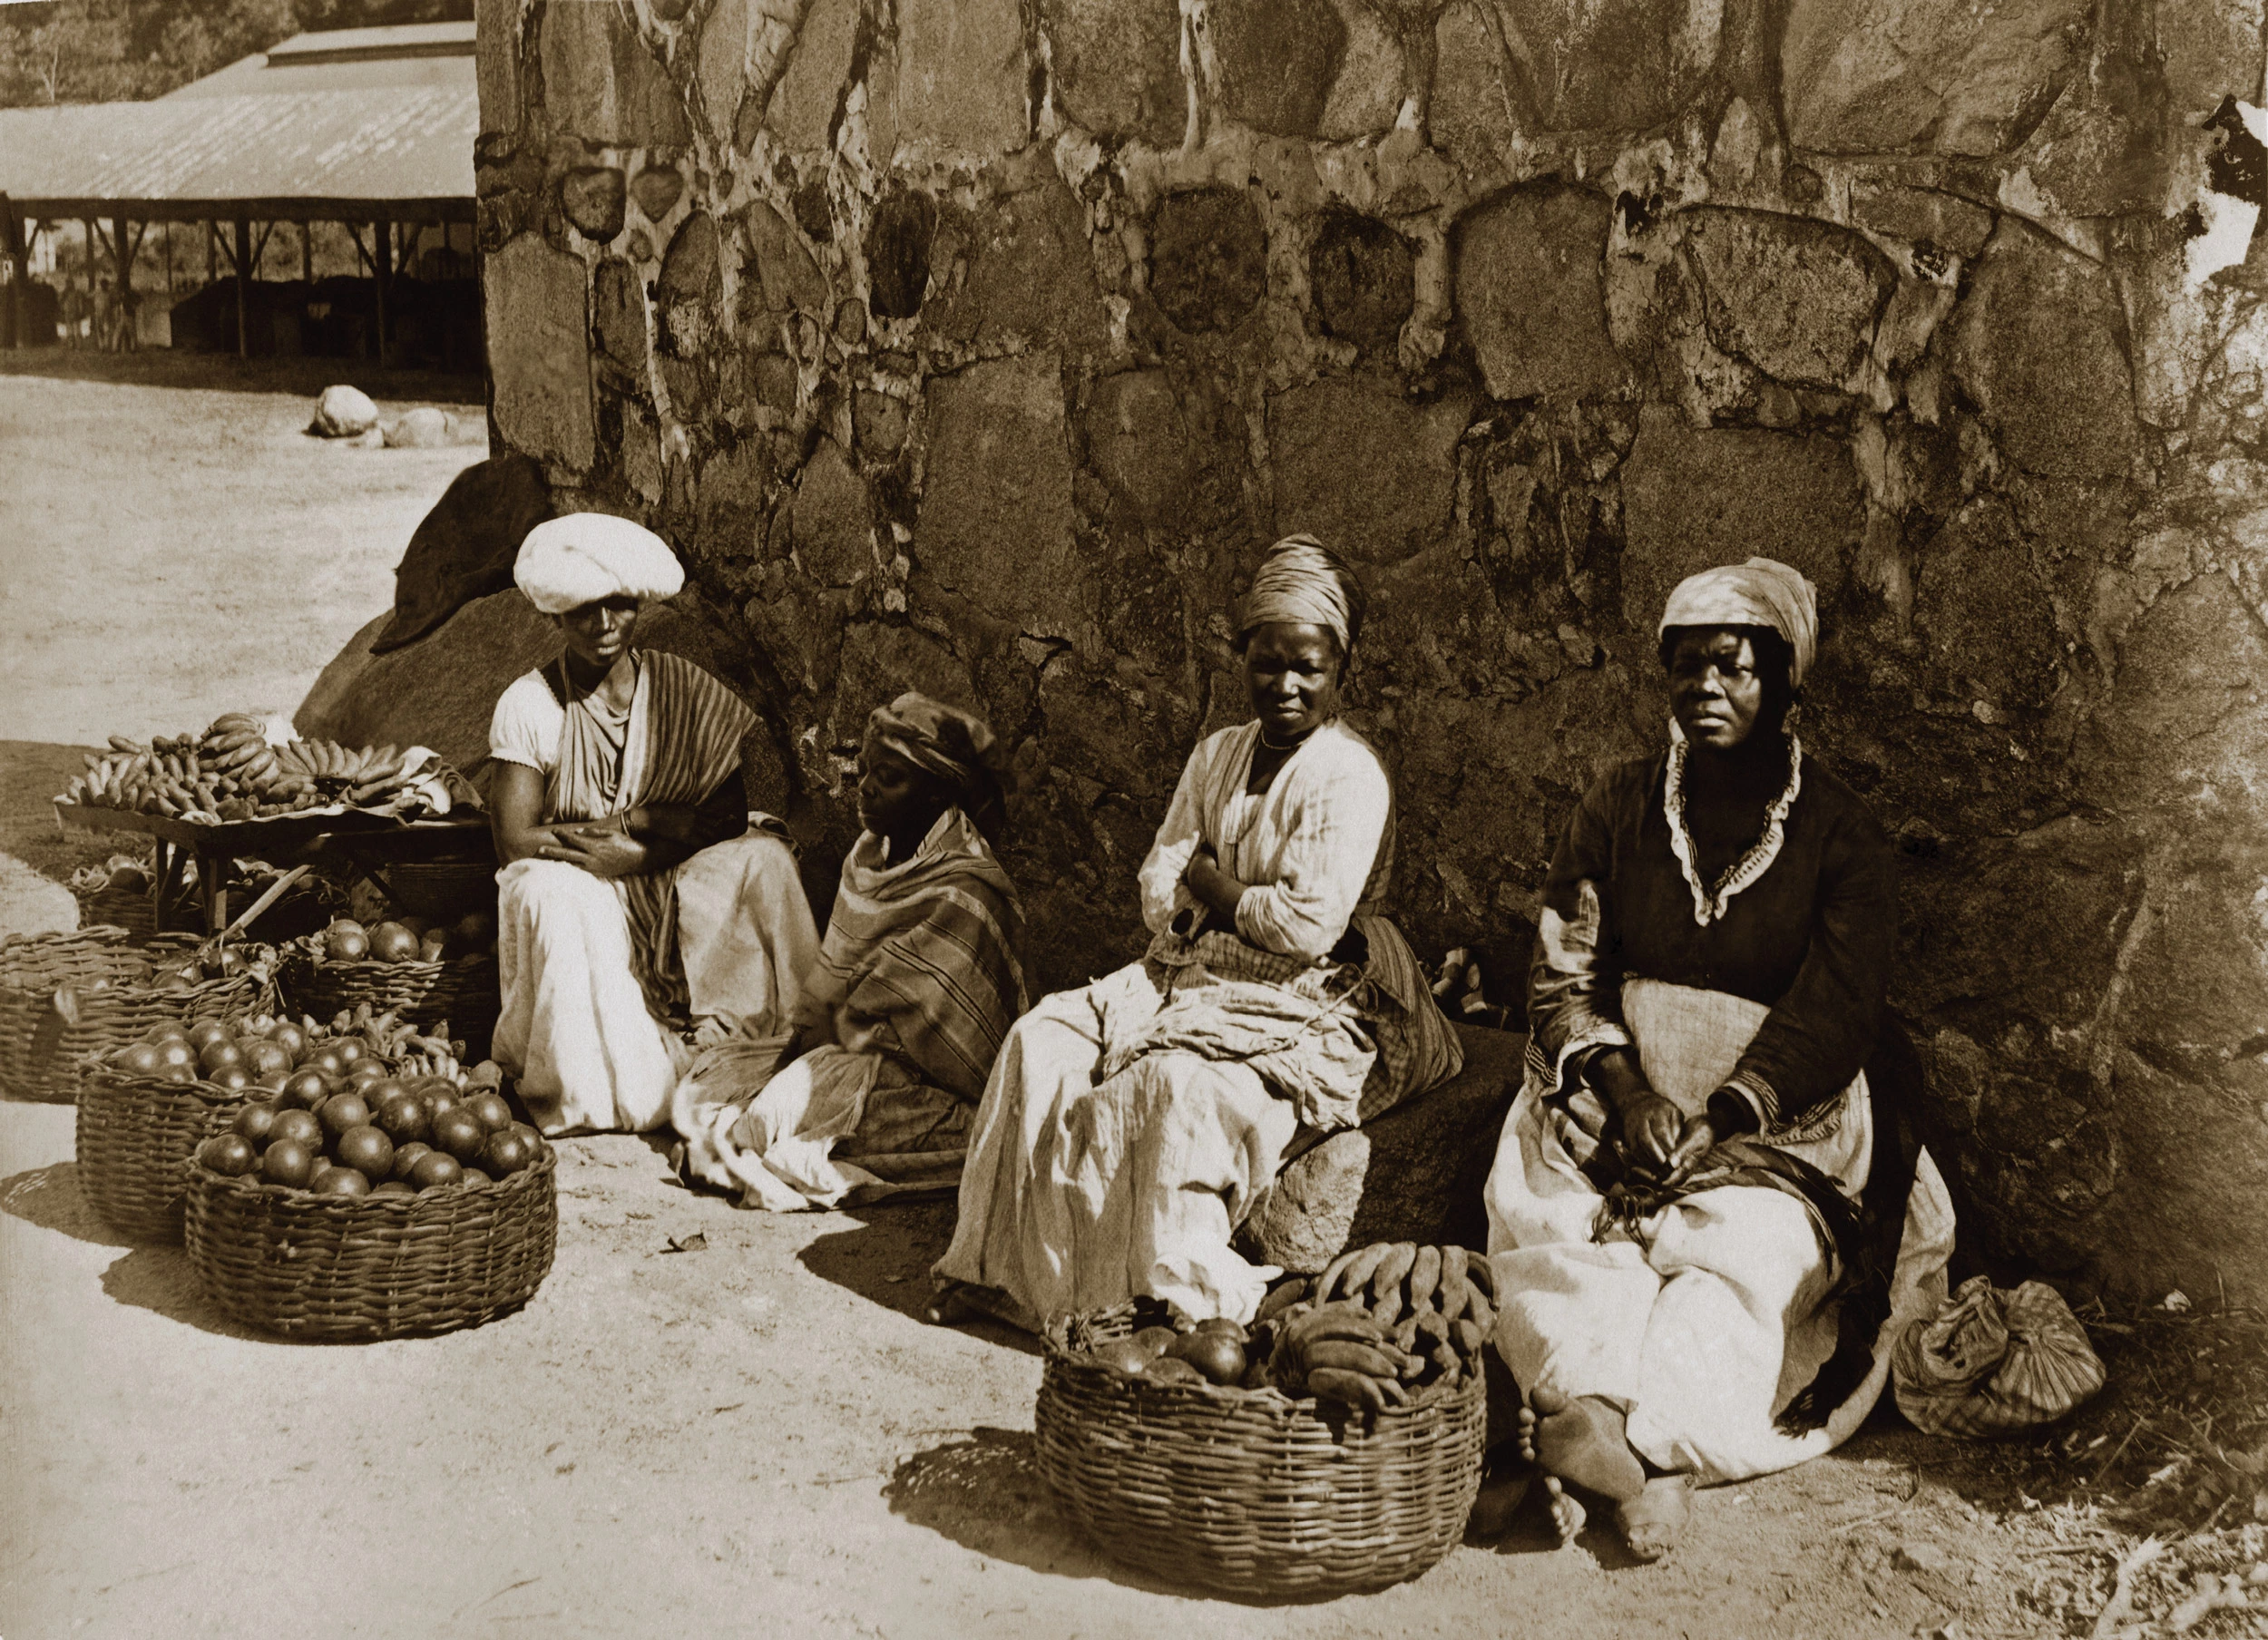 Fotografia do acervo do Instituto Moreira Salles mostra vendedoras de rua no Rio na década de 1870.